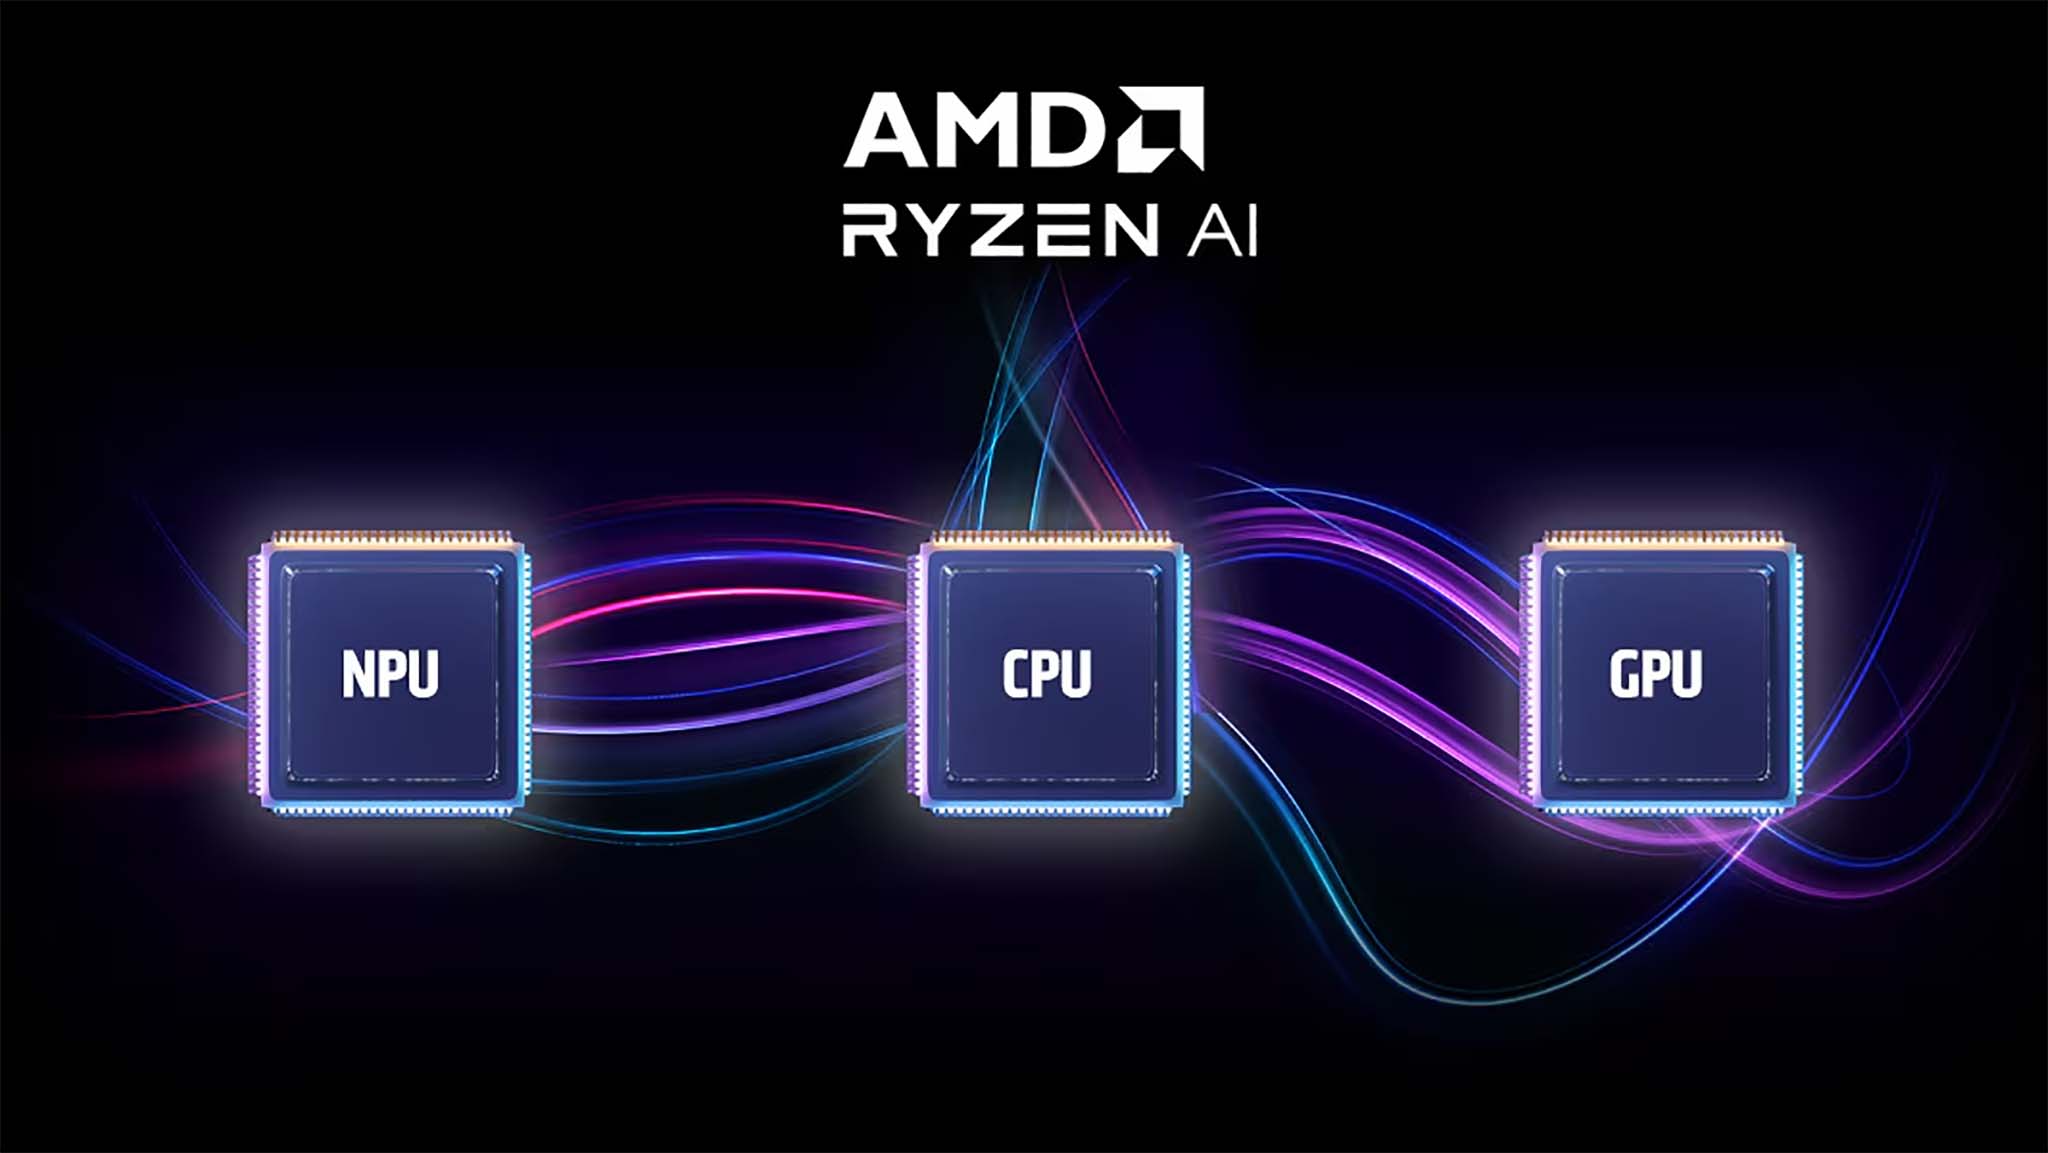 AMD Ryzen AI NPU, CPU, GPU